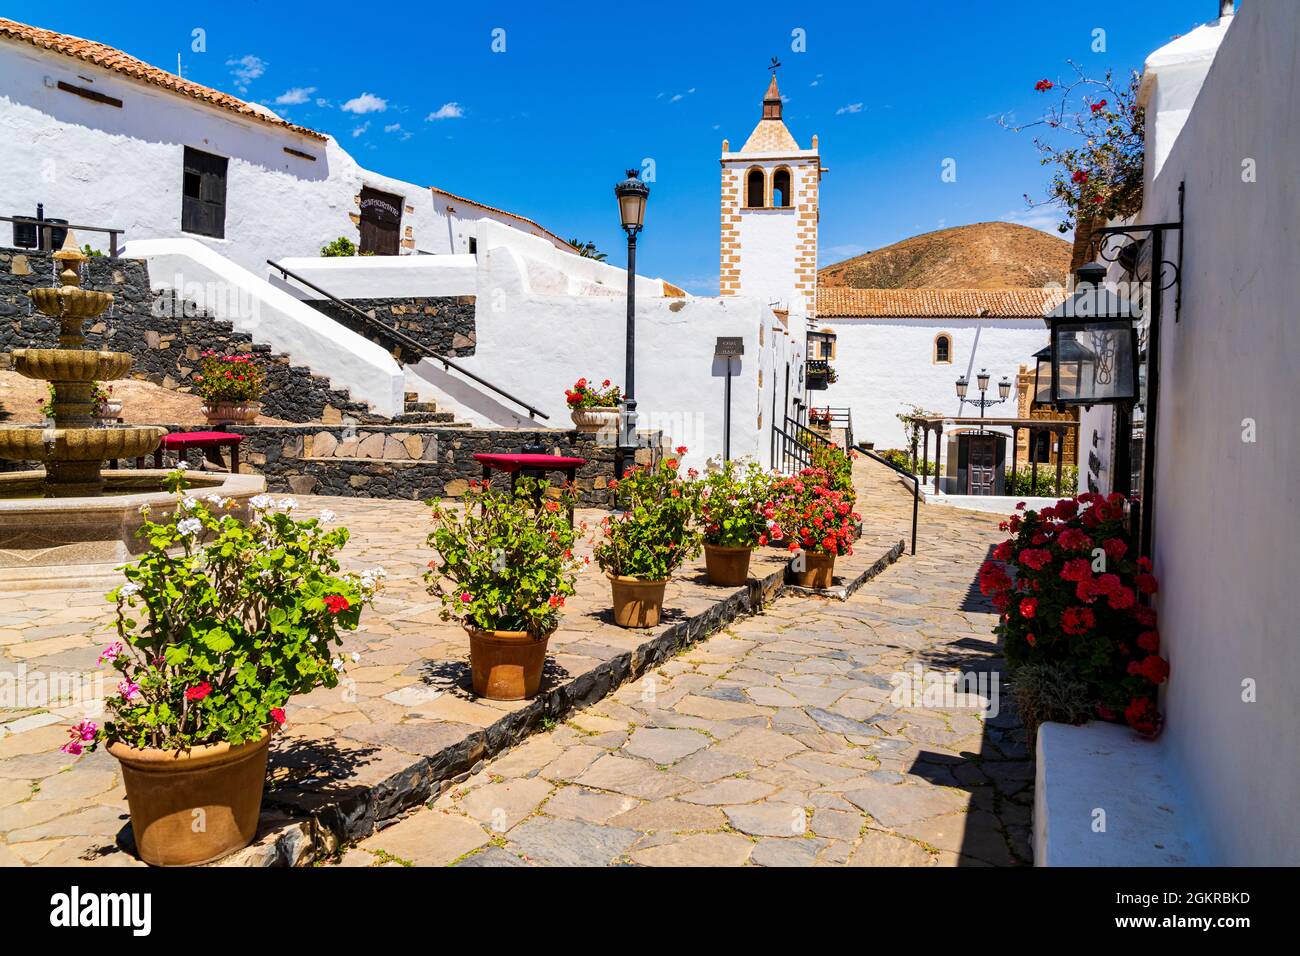 Fleurs colorées encadrant la cathédrale Santa Maria dans la vieille ville de Betancuria, Fuerteventura, îles Canaries, Espagne, Atlantique, Europe Banque D'Images